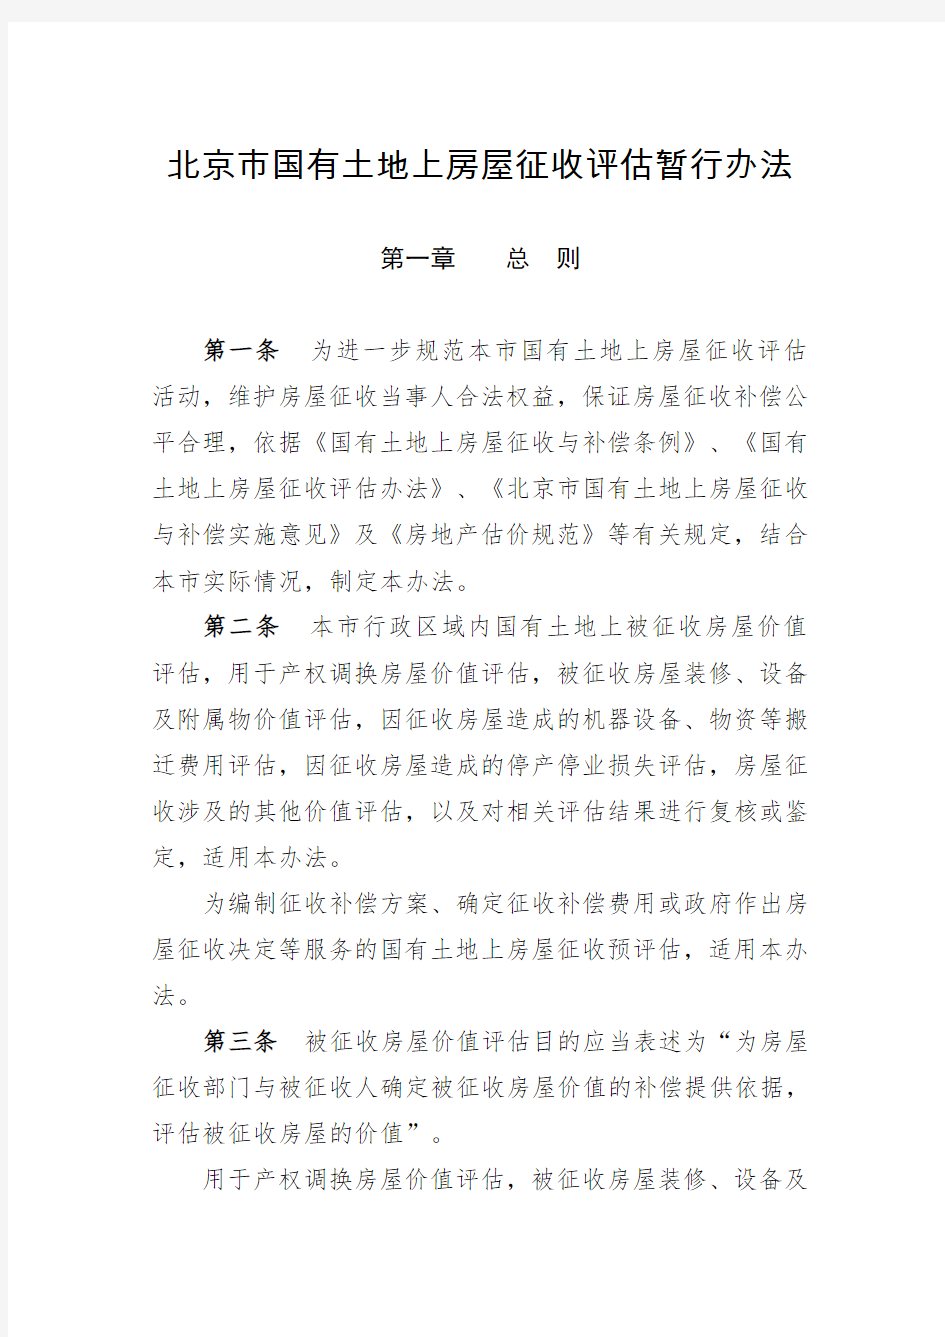 北京市国有土地上房屋征收评估暂行办法